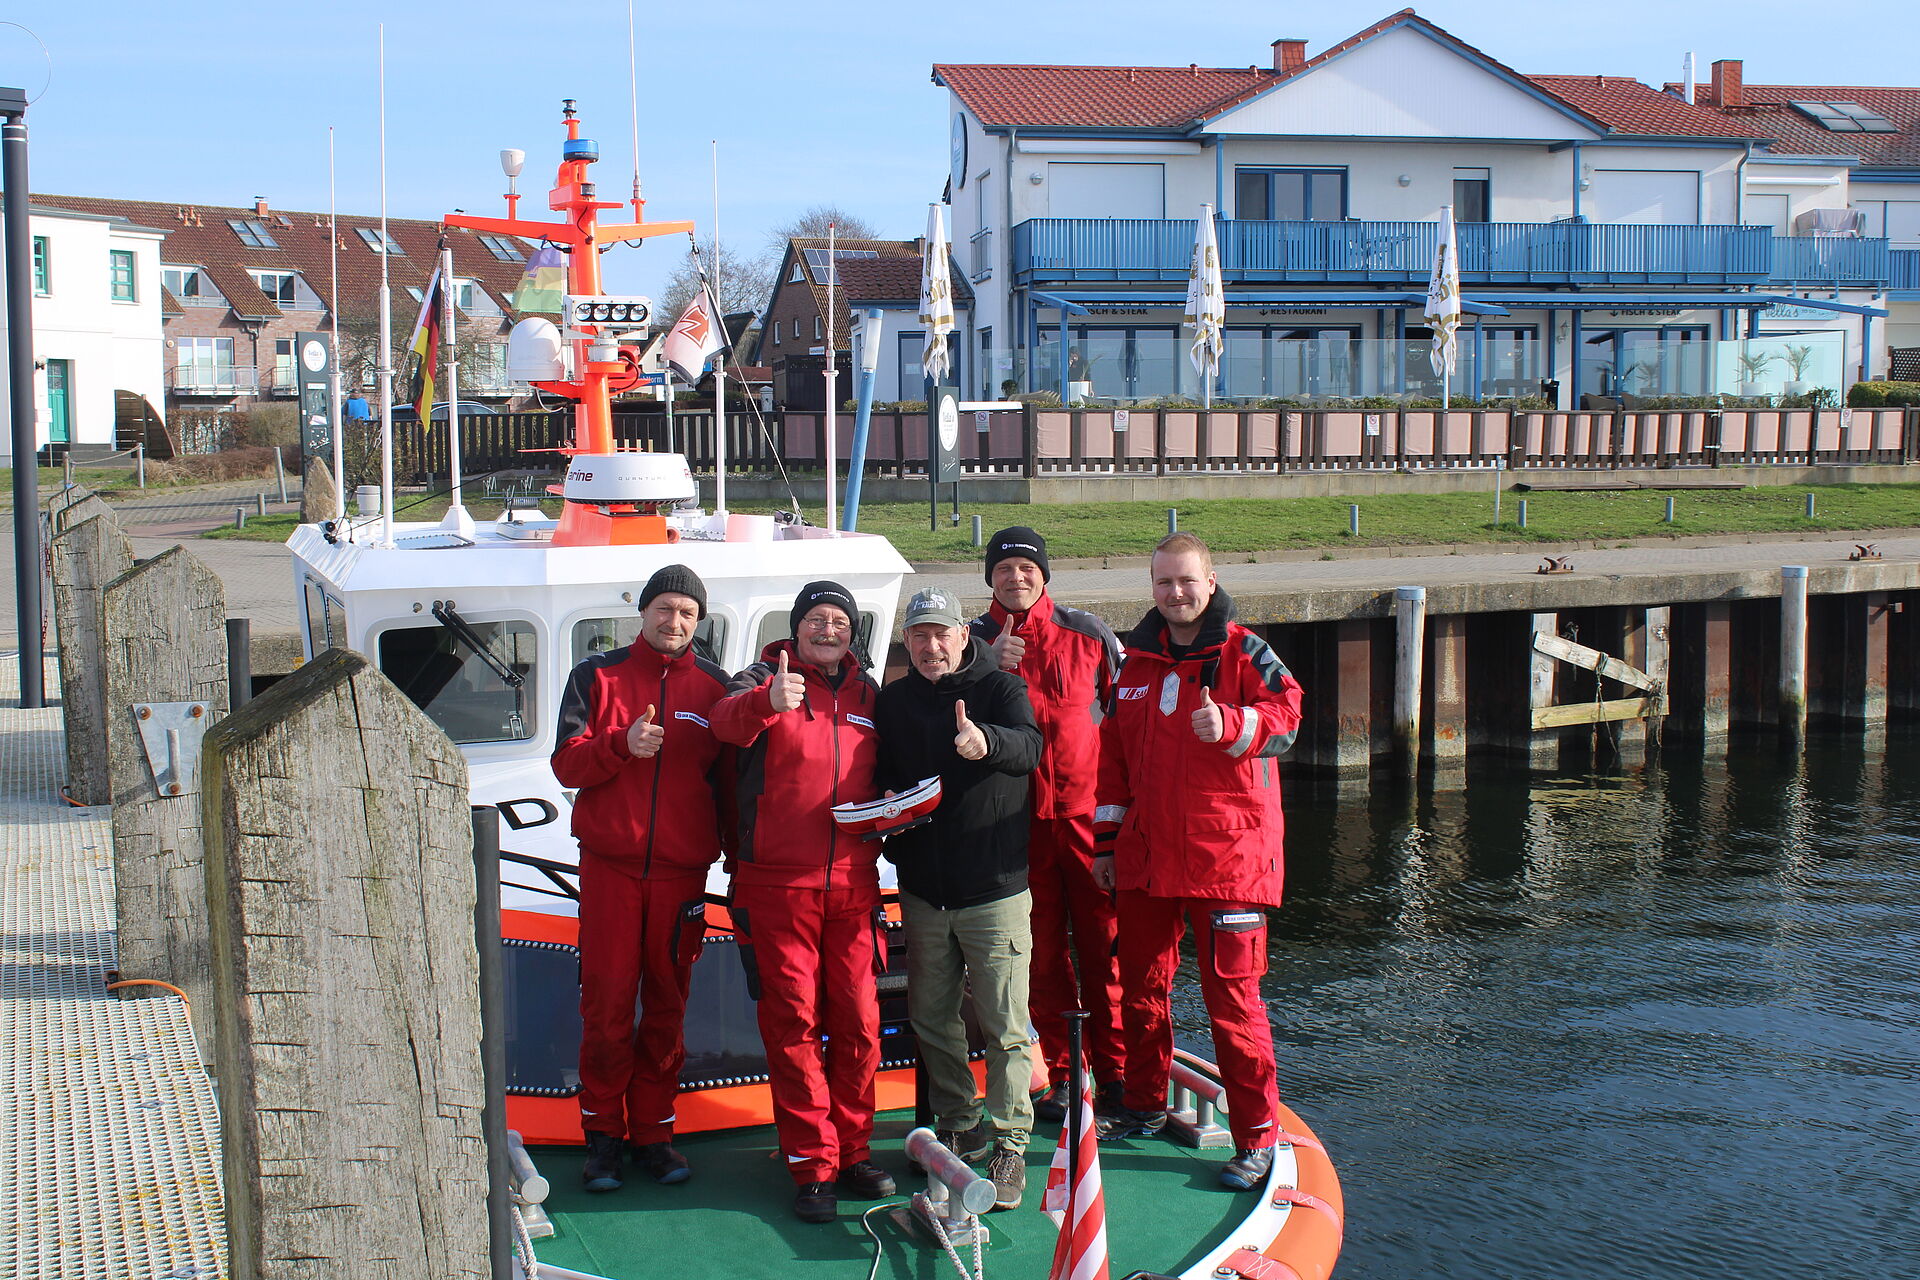 Spendenübergabe auf einem Seenotrettungsboot: Auf diesem stehen vier freiwillige Seenotretter in roter Dienstkleidung. Sie rahmen den NDR-Moderator ein, der ein DGzRS-Sammelschiffchen in den Händen hält. Alle halten einen Daumen hoch.